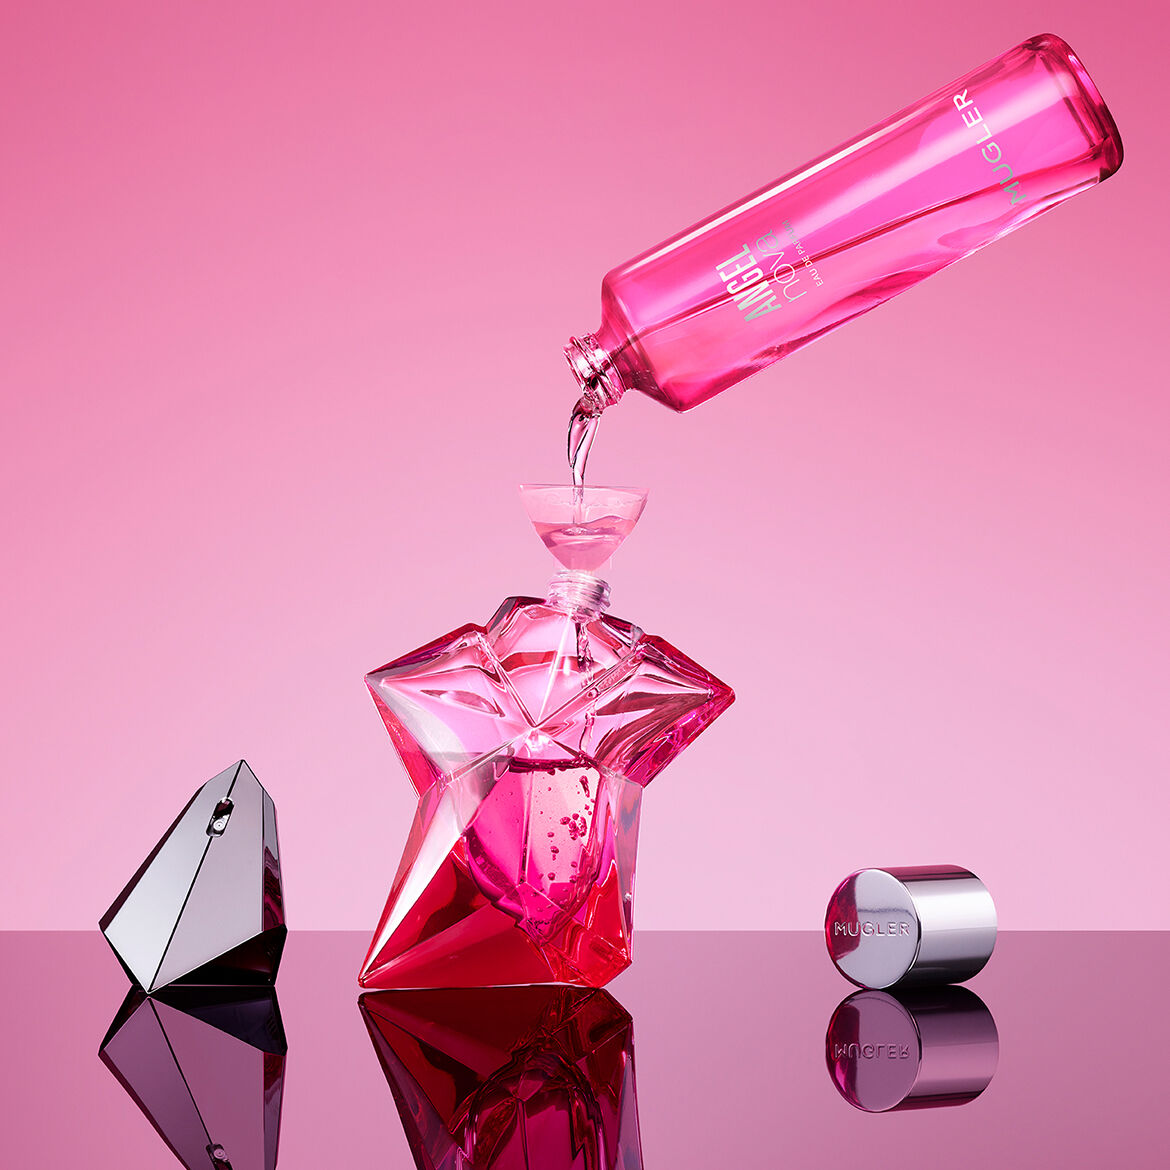 Angel Nova EDP for Women (Refillable) - Perfume Planet 